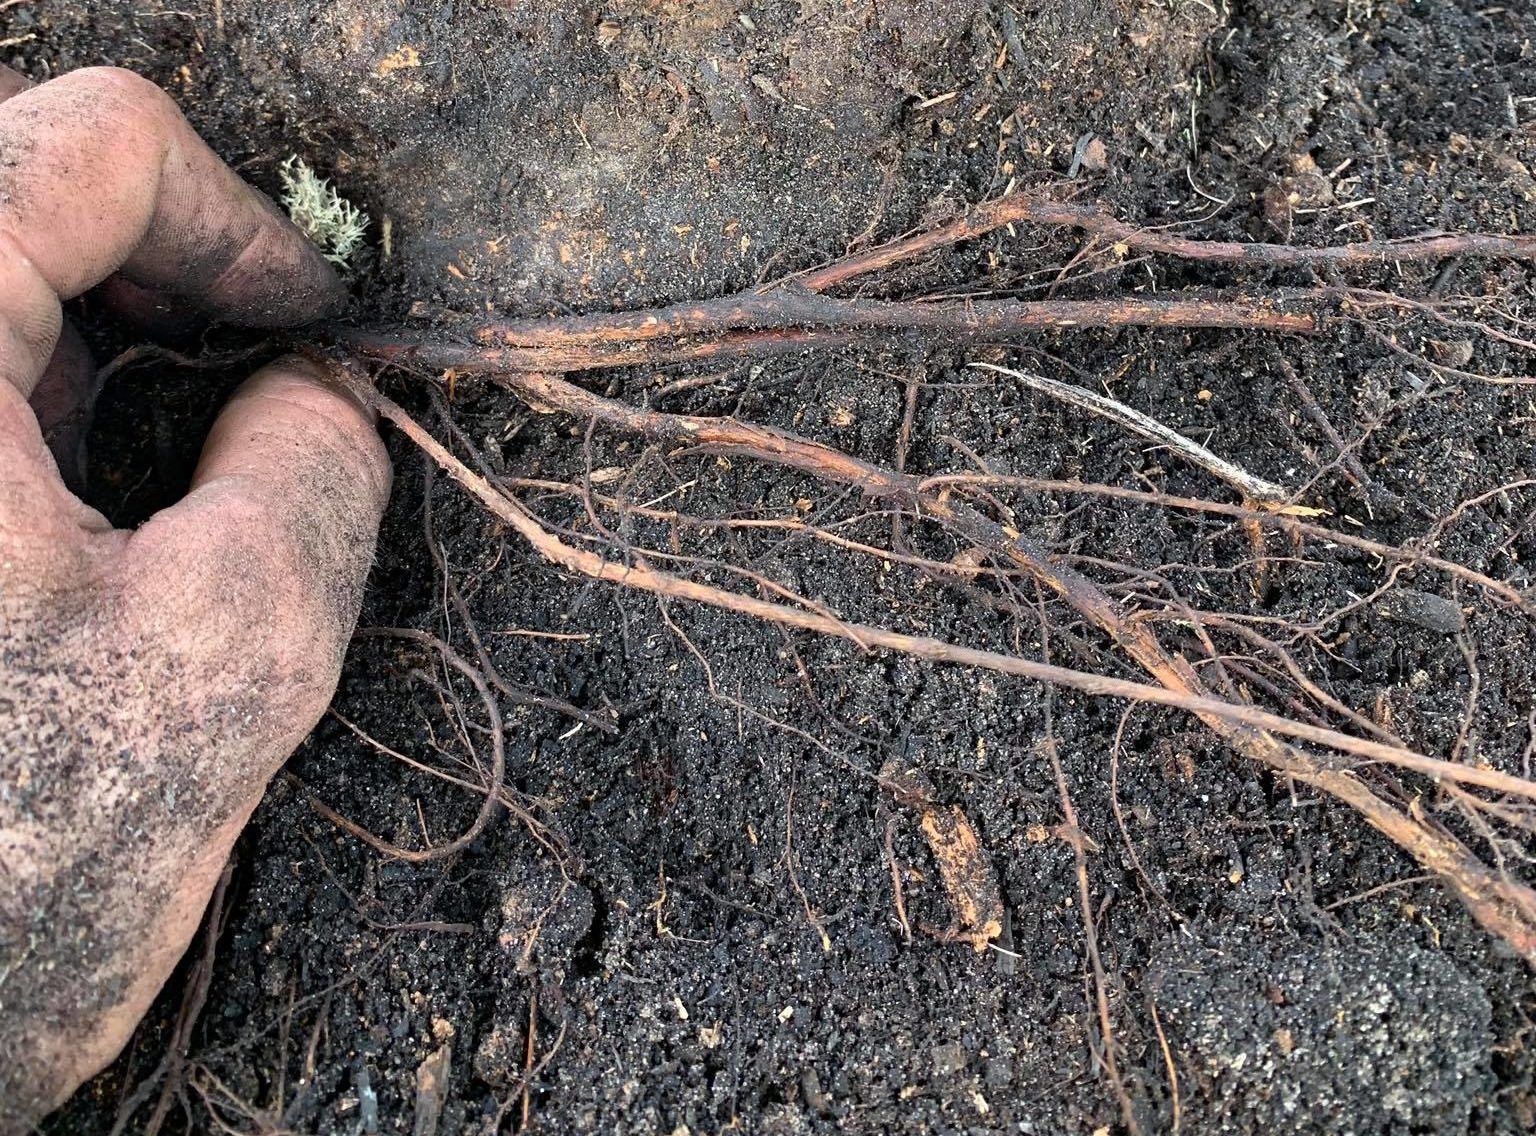 Deep Root Fertilization